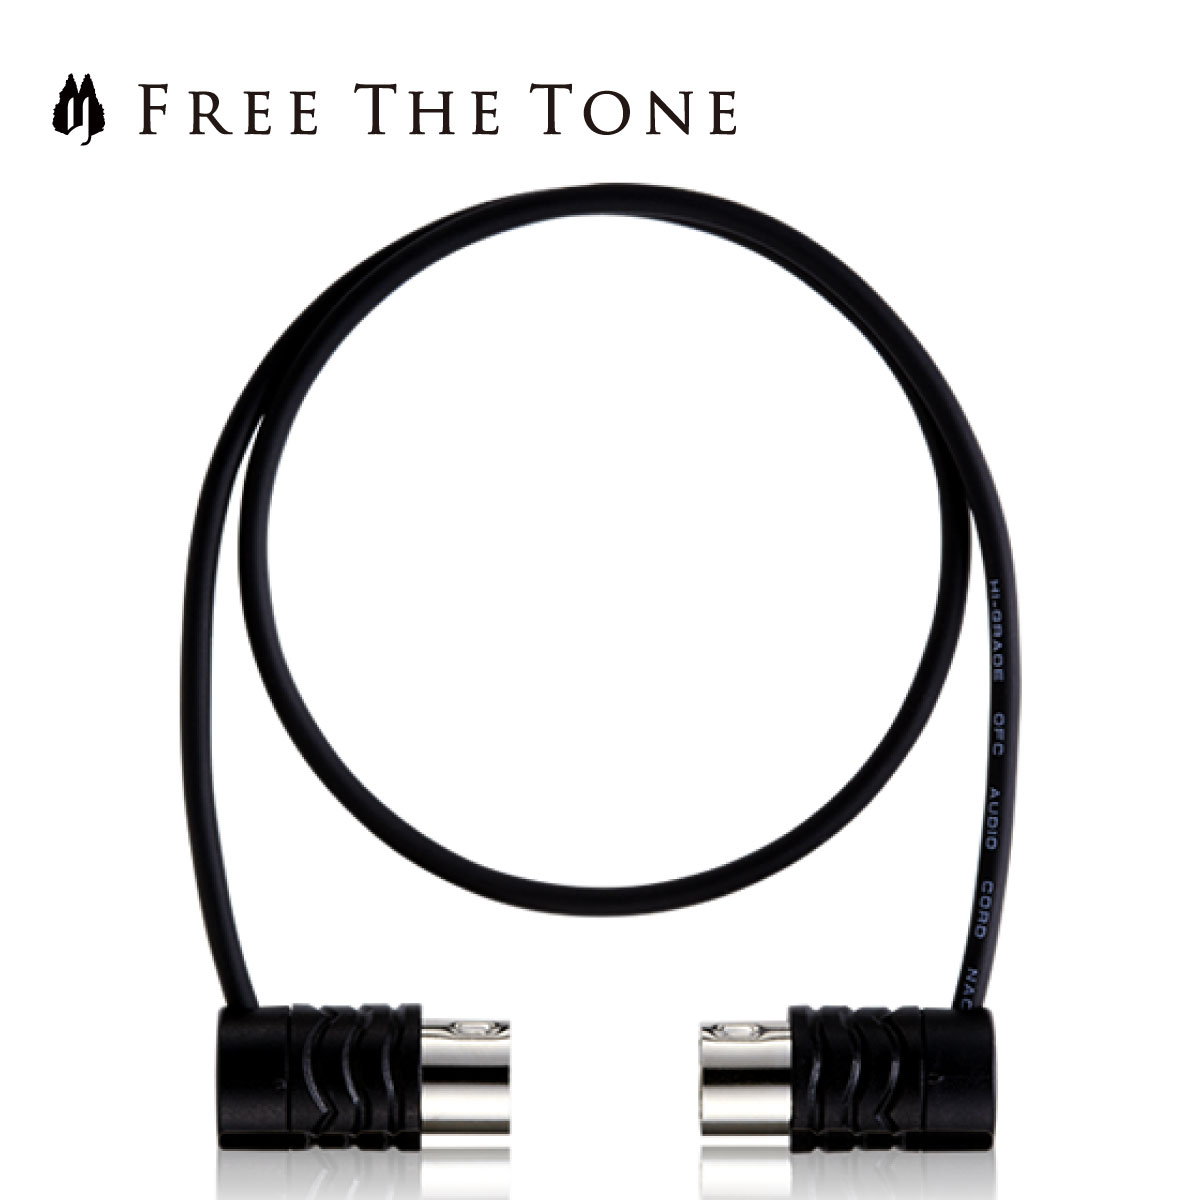 Free The Tone MIDI CABLE CM-3510 100cm MIDIケーブル 新品[フリーザトーン]